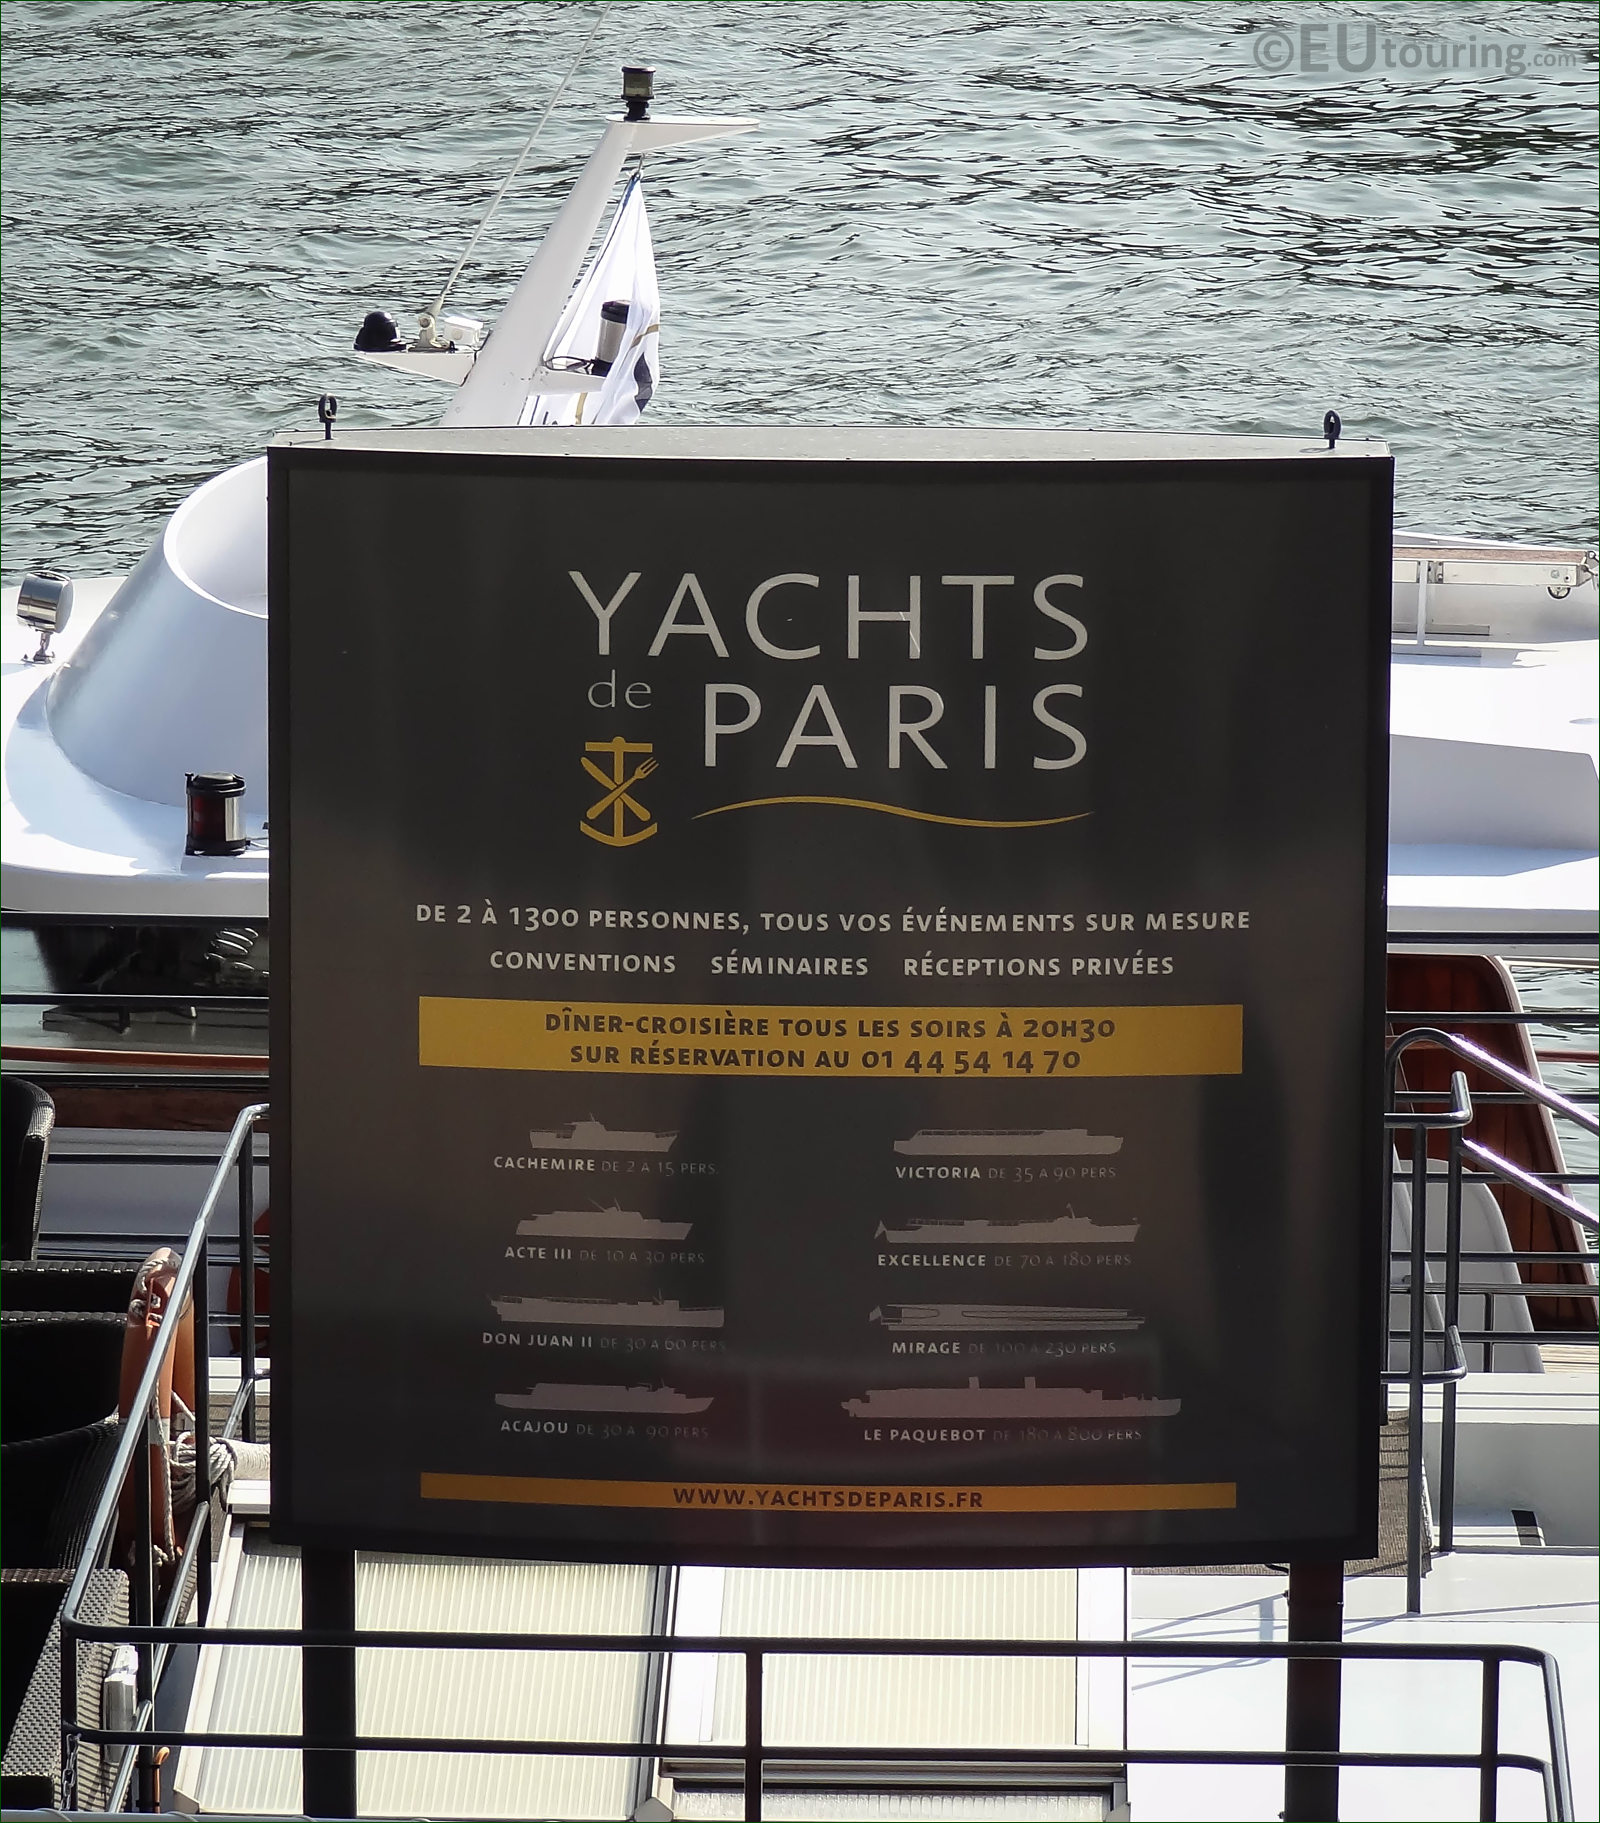 yachts de paris port henri iv 75004 paris